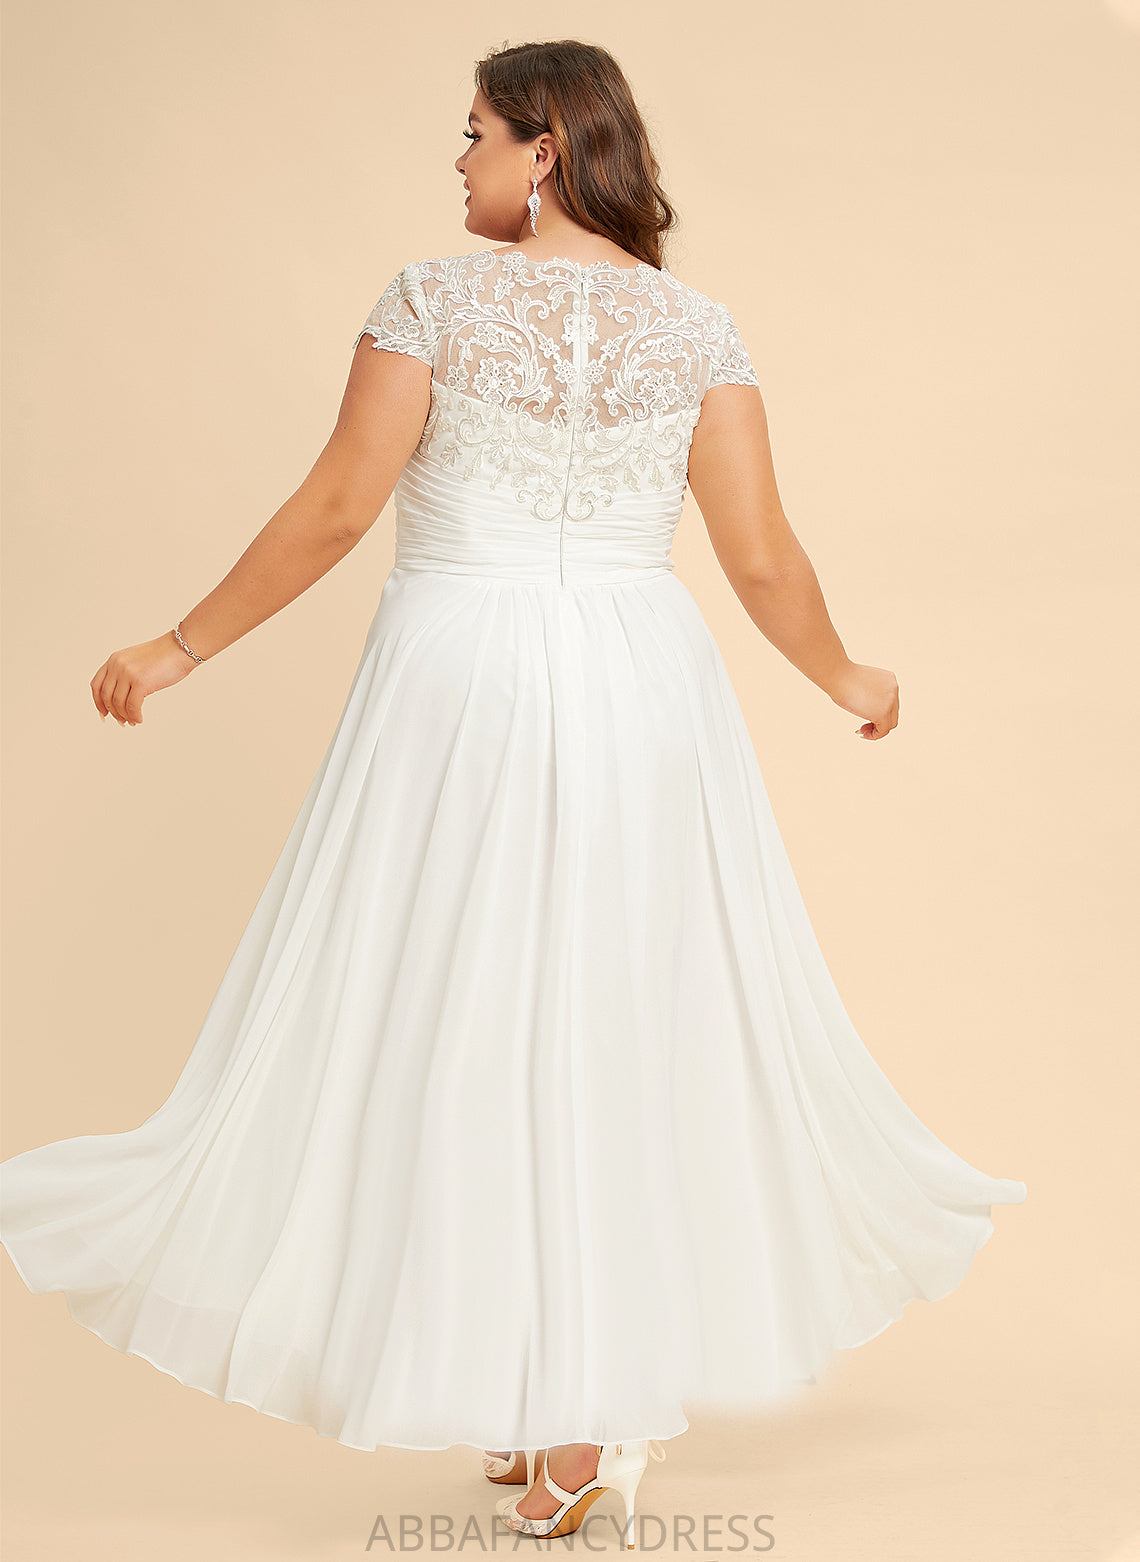 A-Line Wedding Dresses Wedding Lace Asymmetrical Chiffon Scoop Dress Bryanna